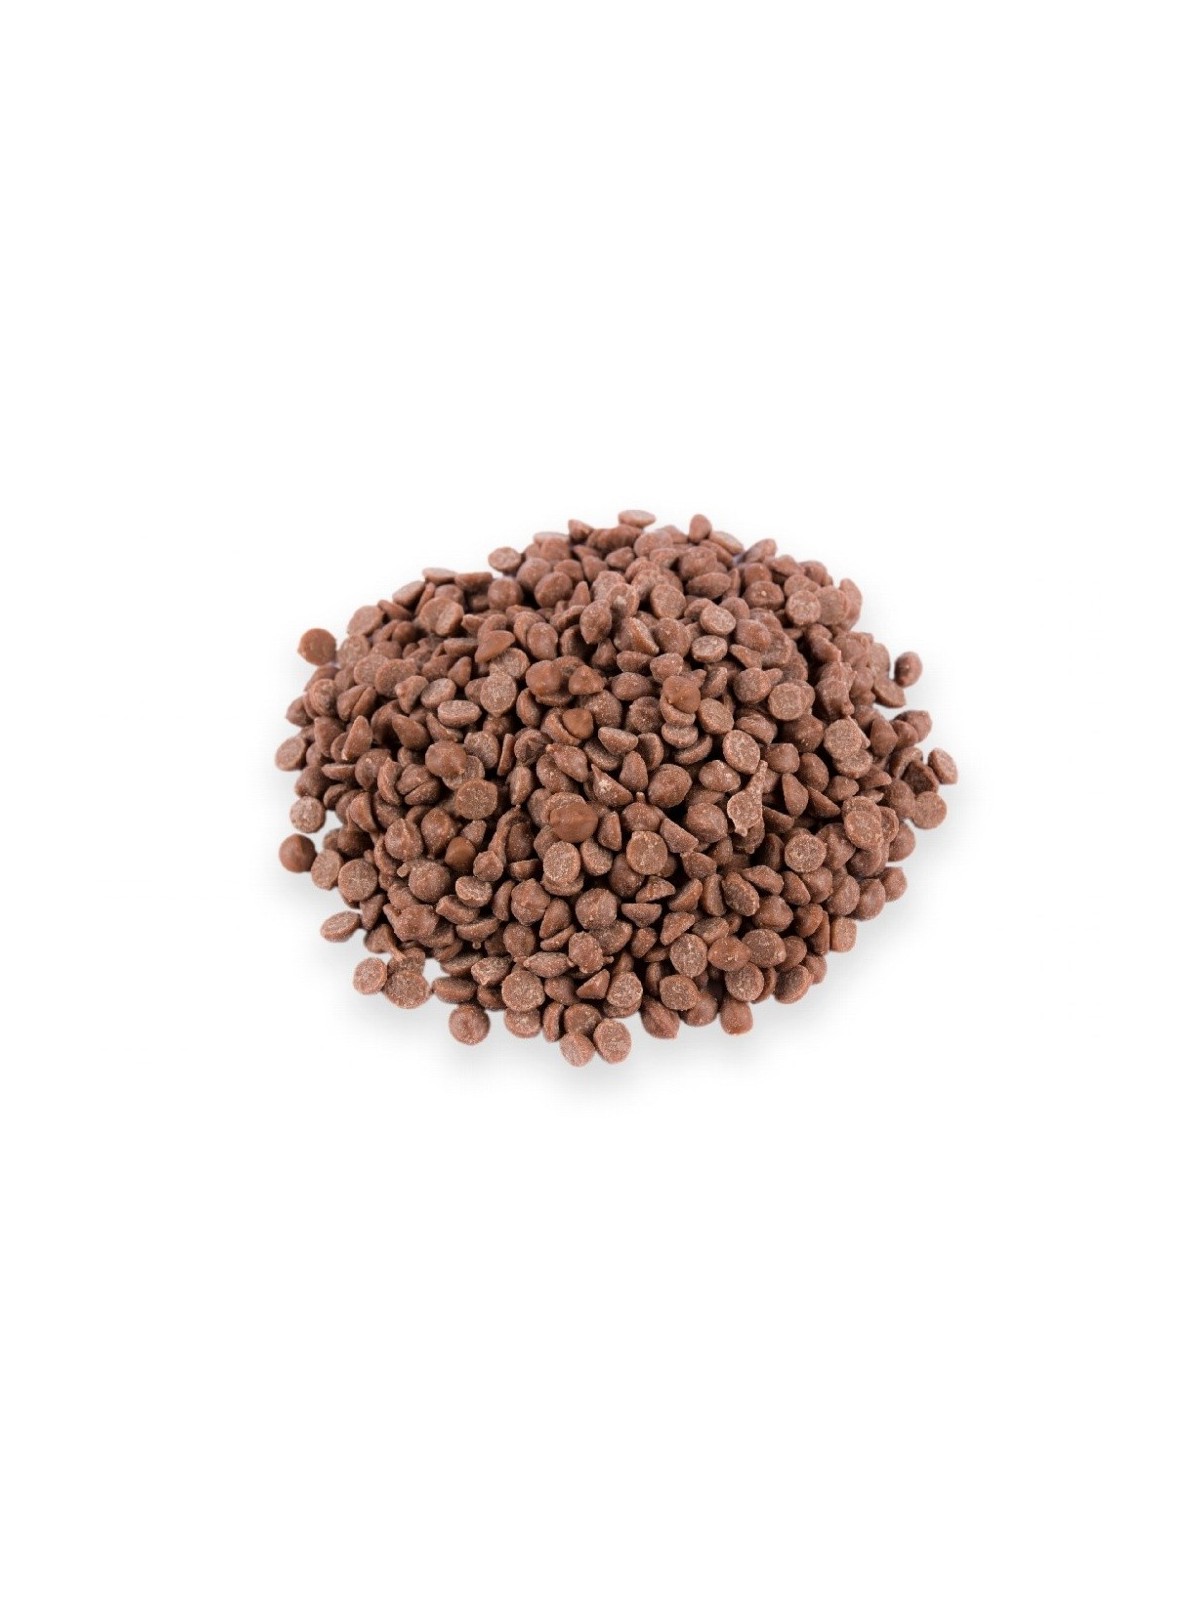 Thermostabile Schokoriegel - Milchschokolade - ohne Palmöl - 500g